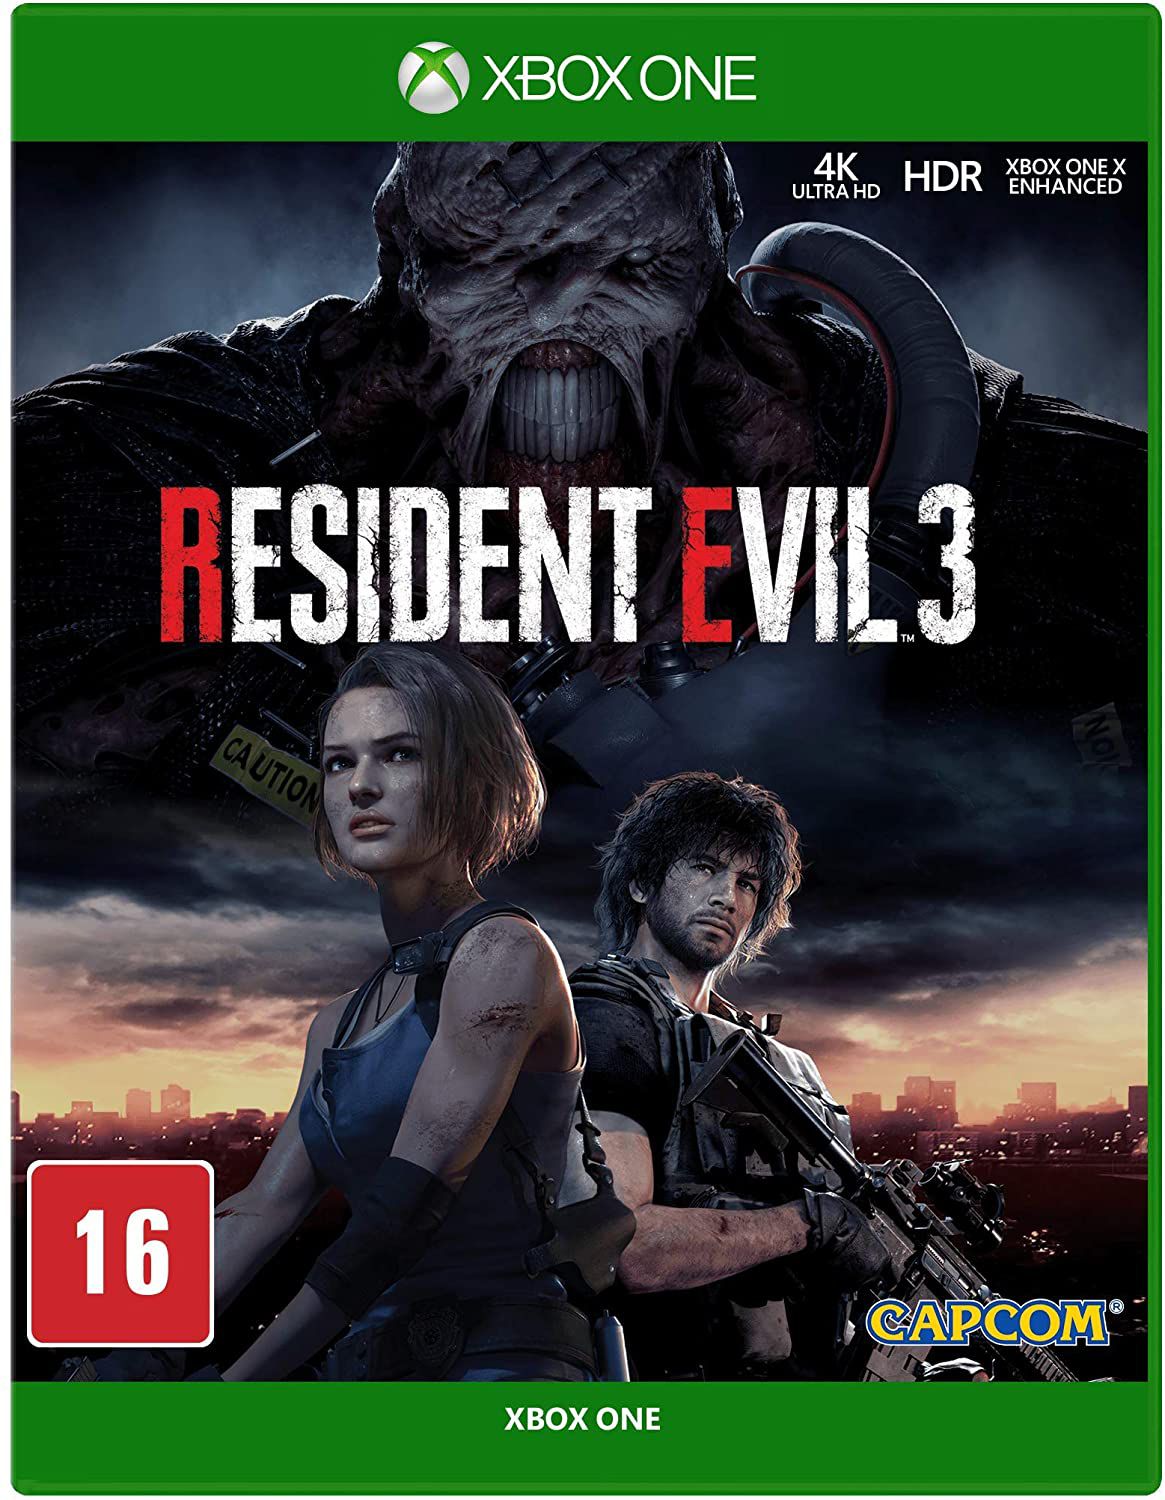 Resident Evil 5 xbox 360 original em mídia física - Desconto no Preço